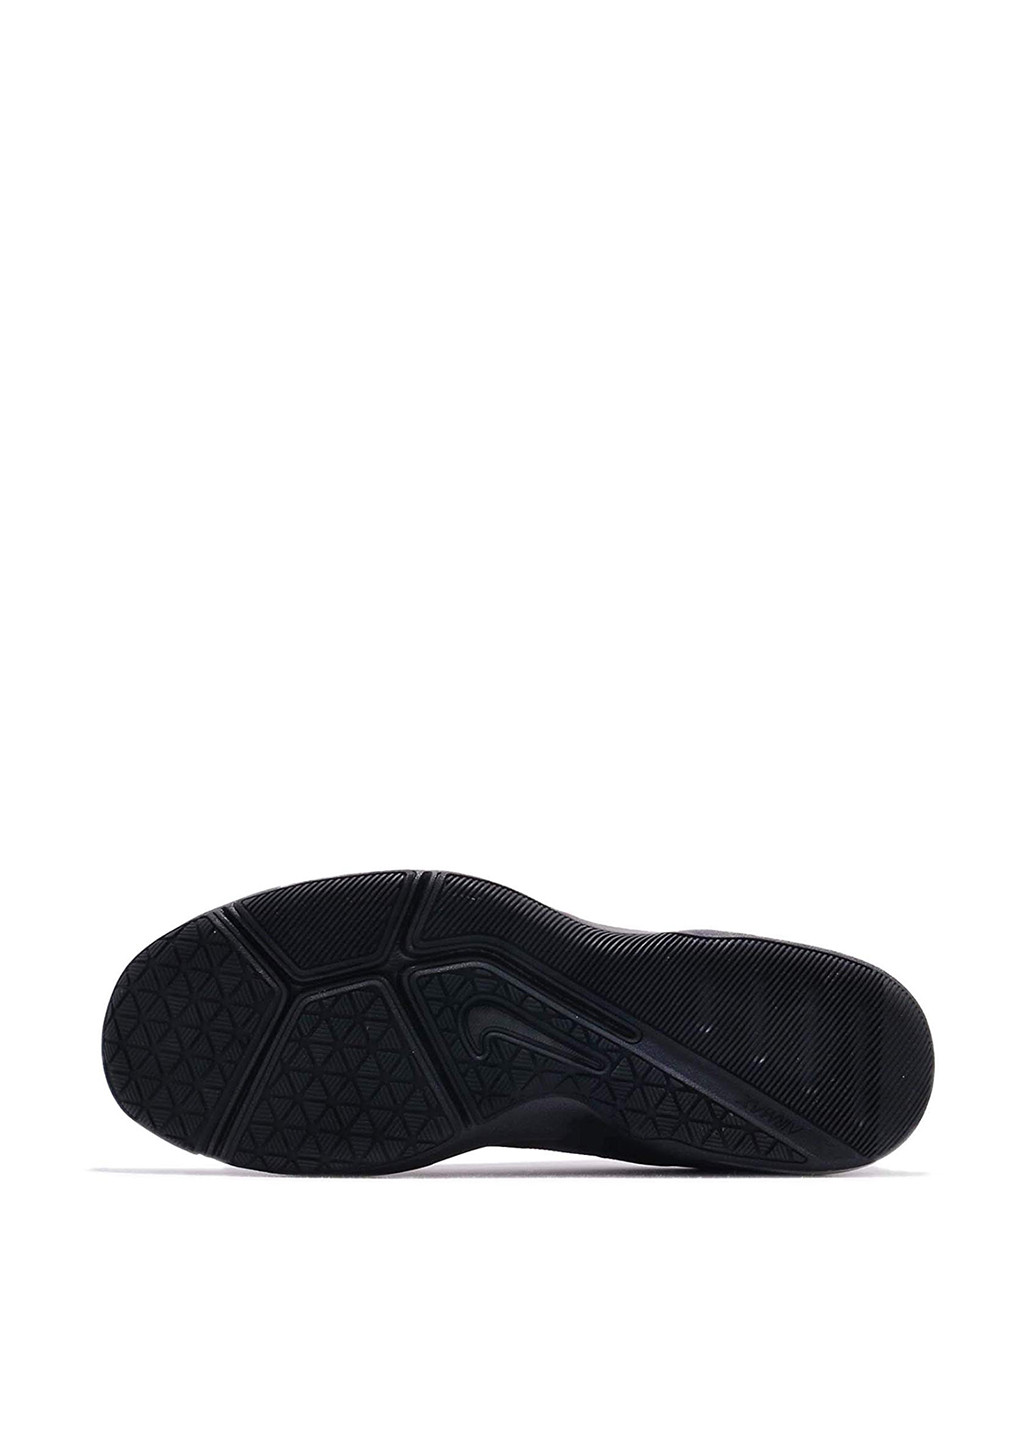 Черные демисезонные кроссовки Nike Air Max Alpha Trainer